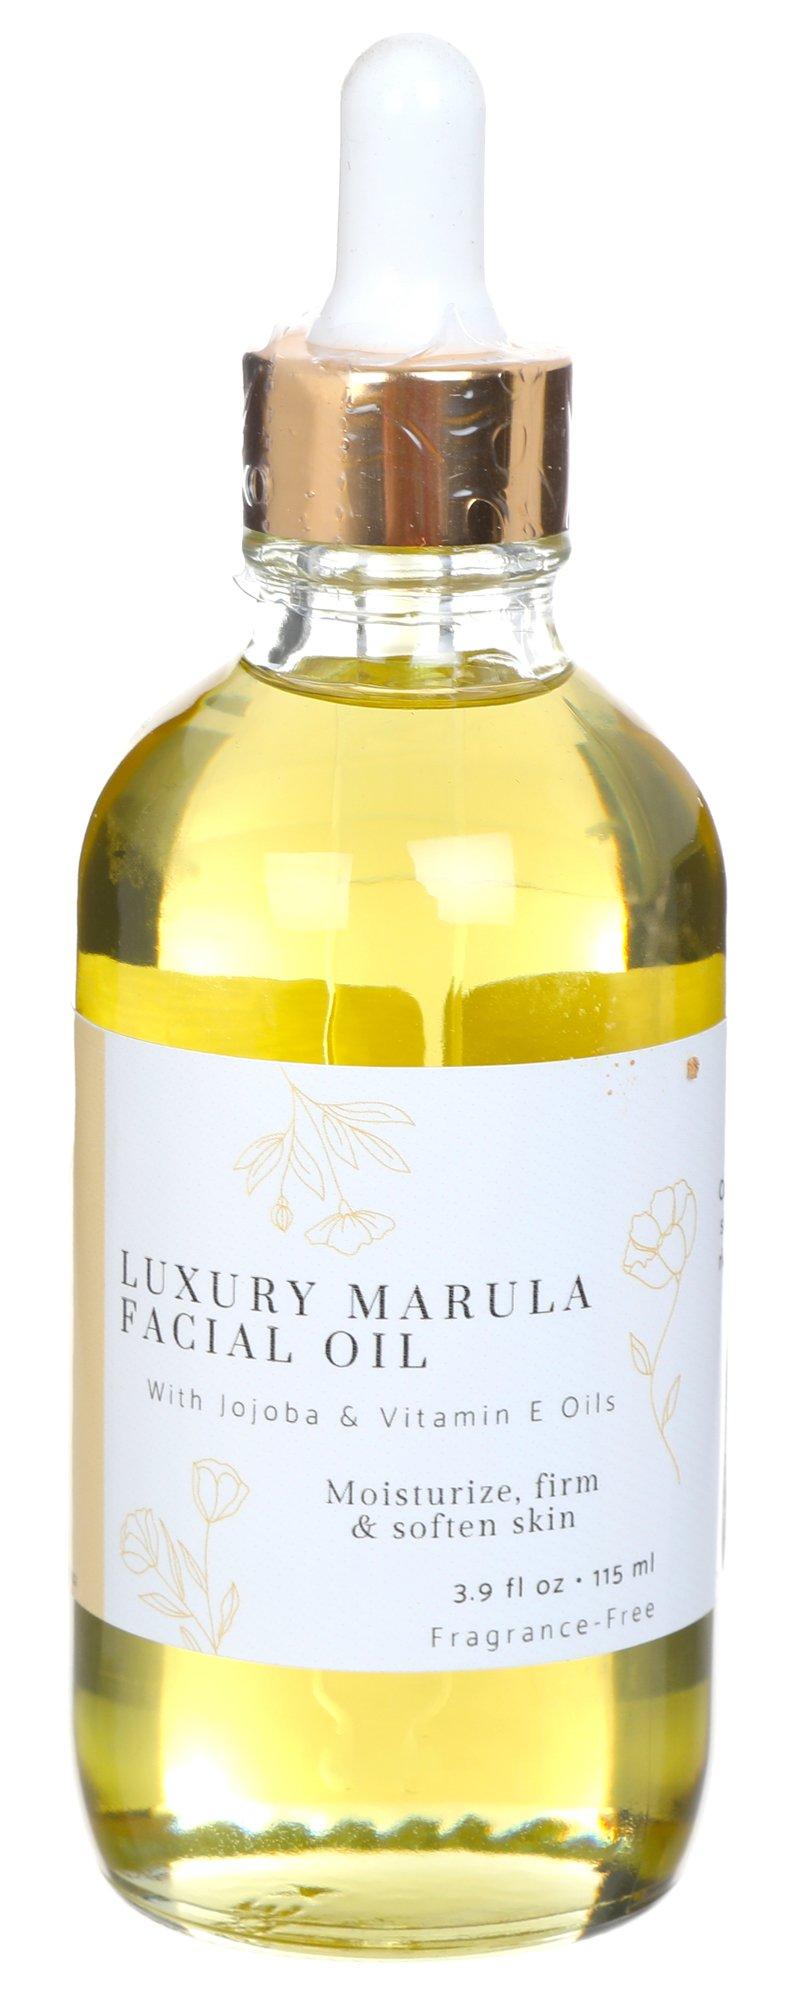 Luxury Marula Facial Oil